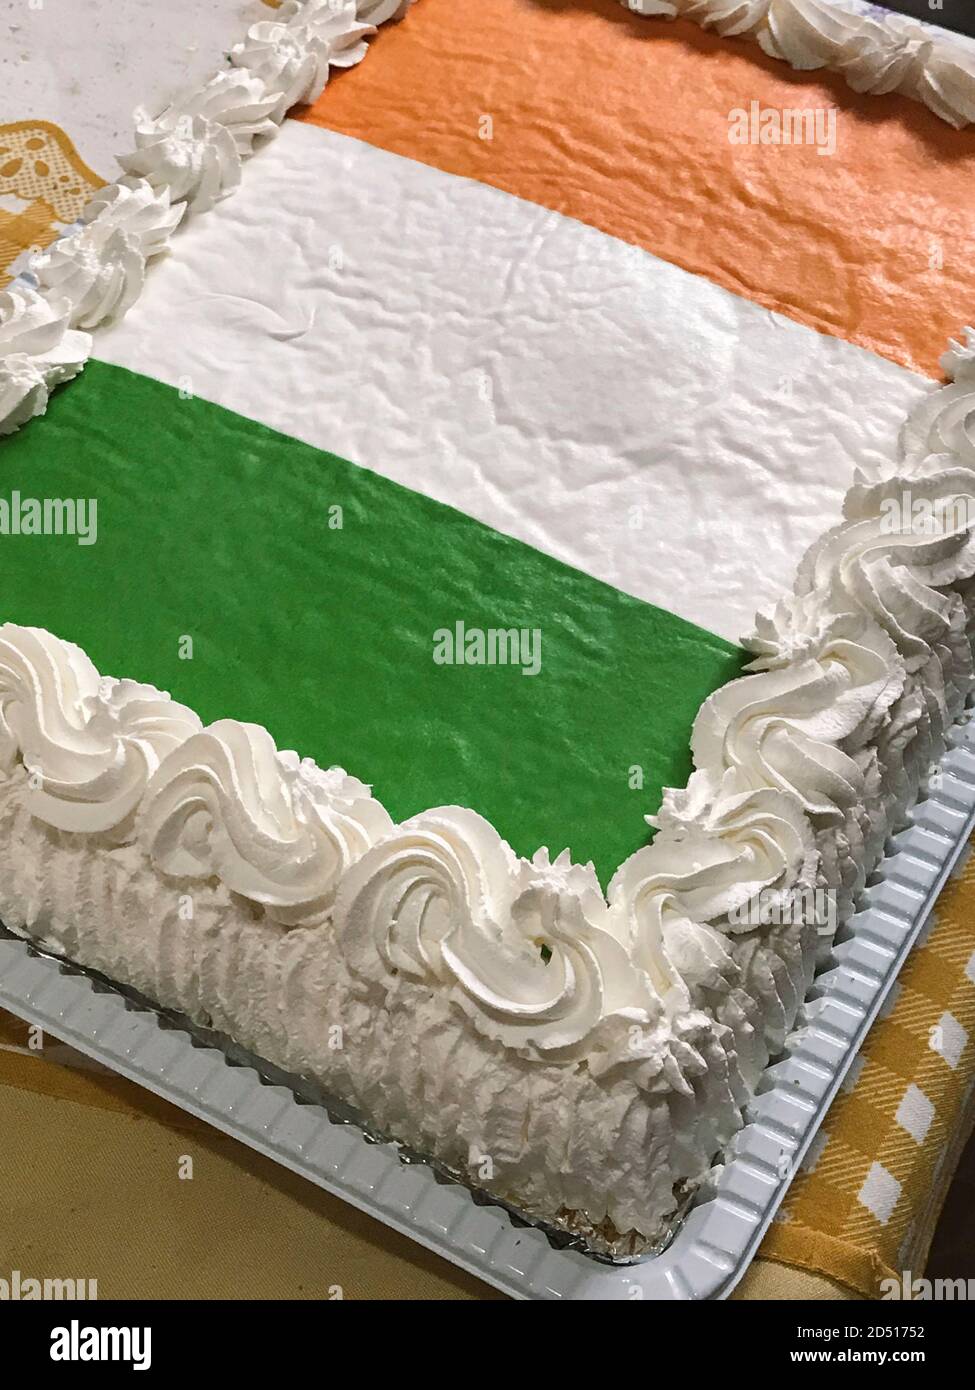 Kuchen in Form einer irischen Flagge Konzept Bild, Raum für Text Stockfoto